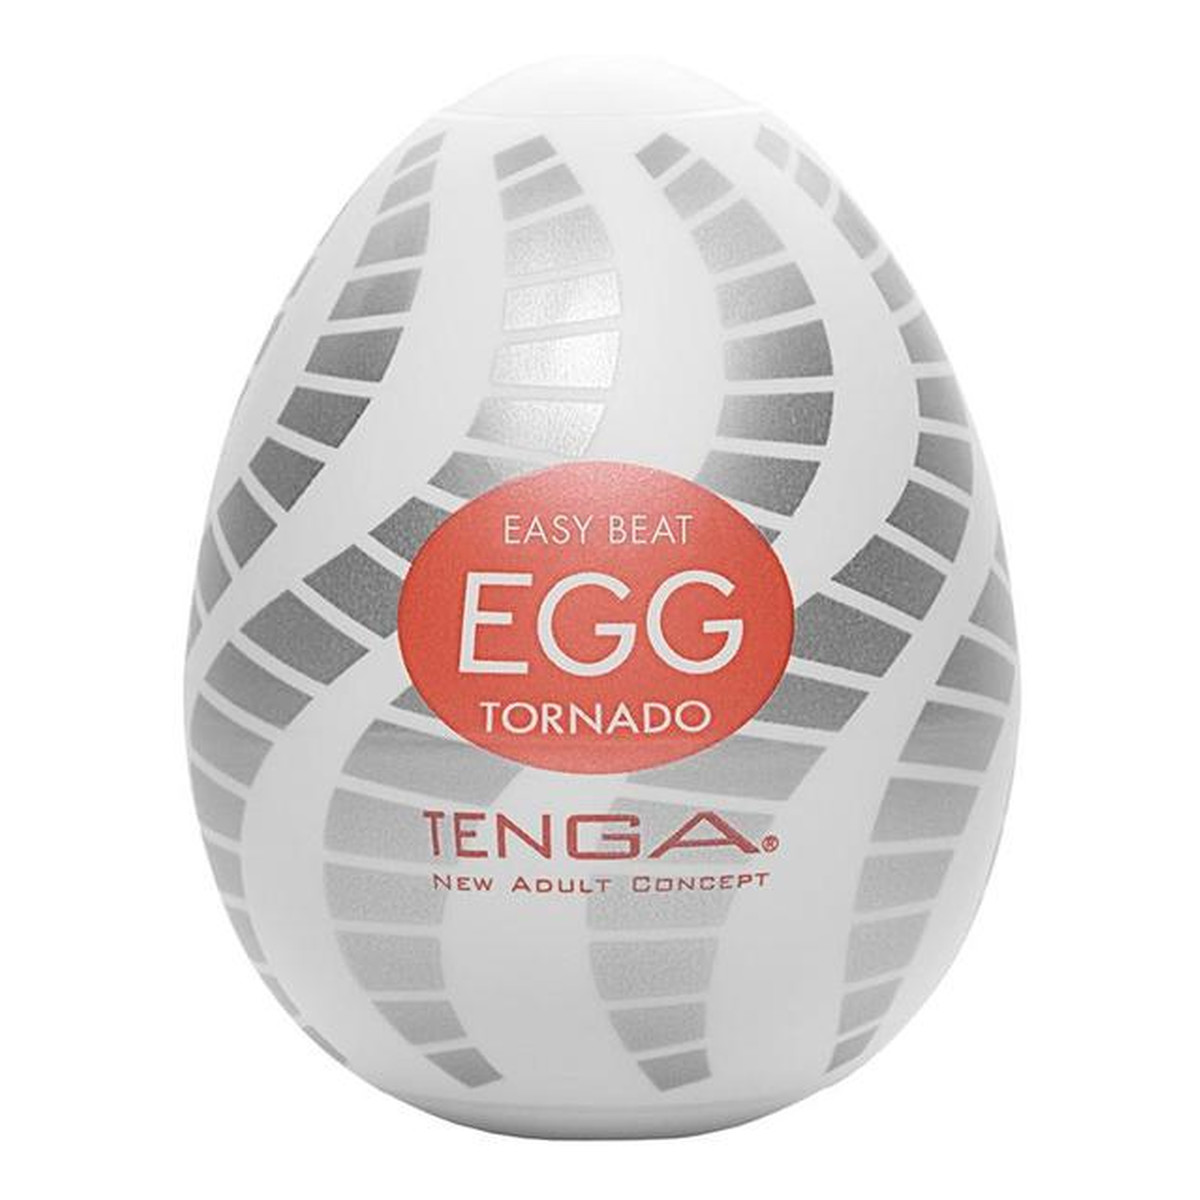 Tenga Easy beat egg tornado jednorazowy masturbator w kształcie jajka